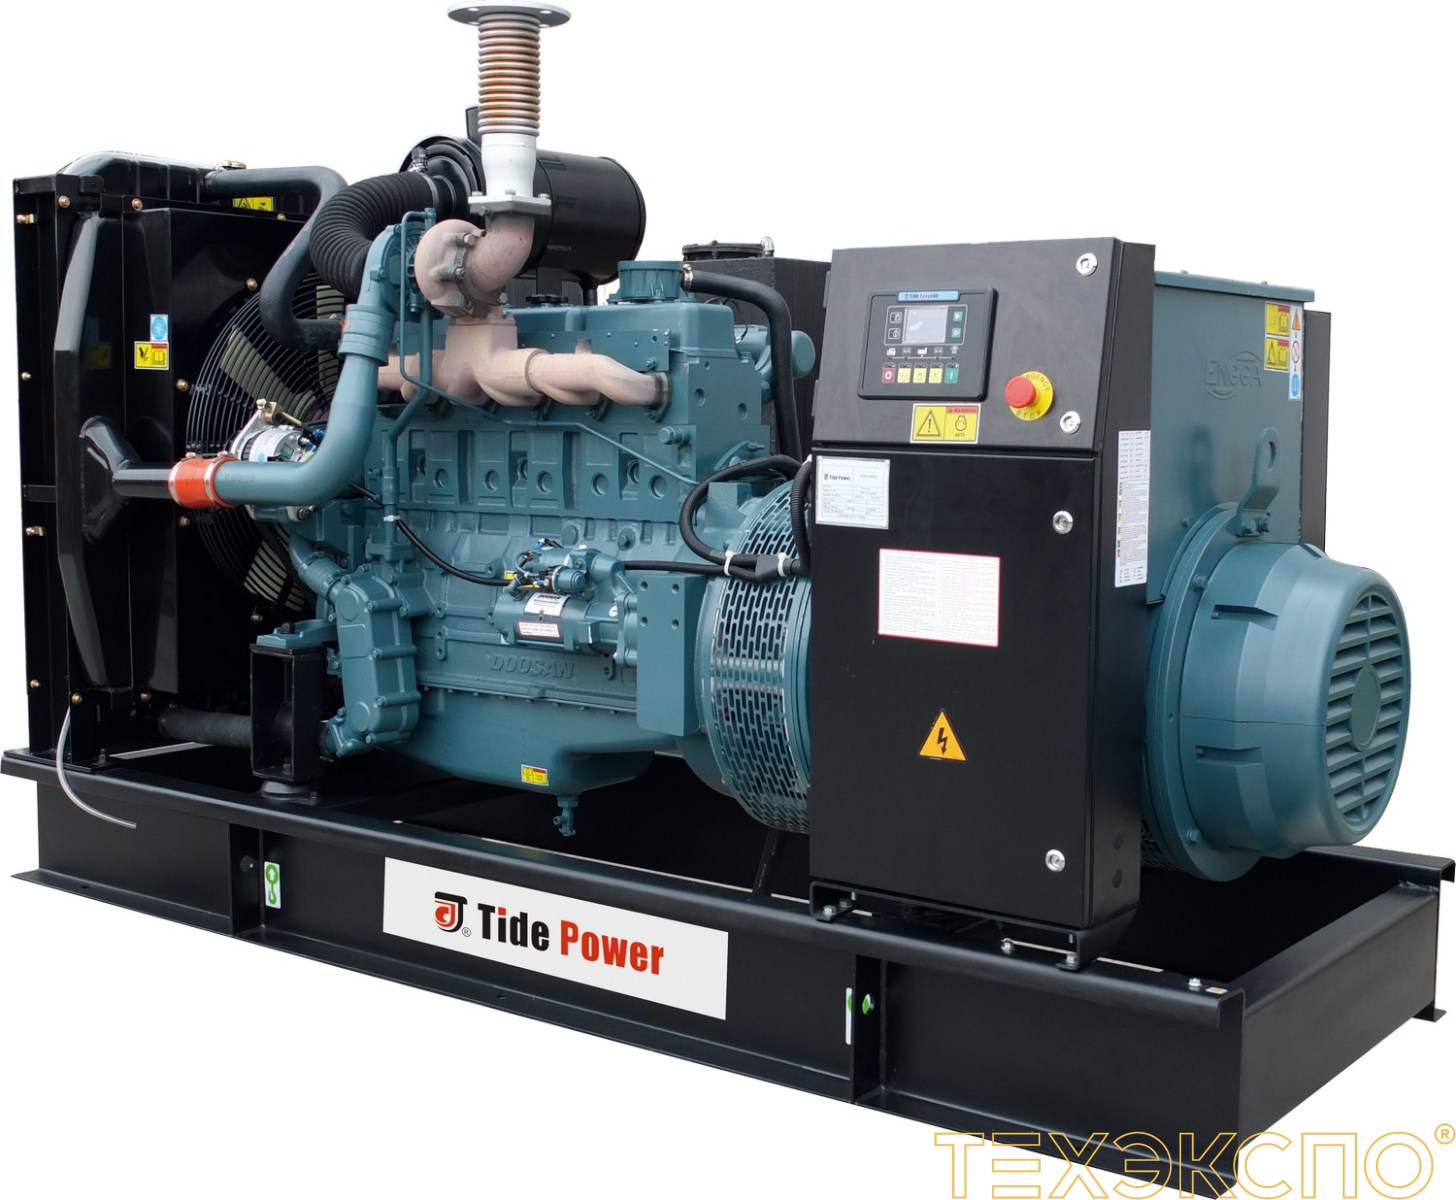 Tide Power FB525-K - ДЭС 420 кВт в Санкт-Петербурге за 4 056 363 рублей | Дизельная электростанция в Техэкспо